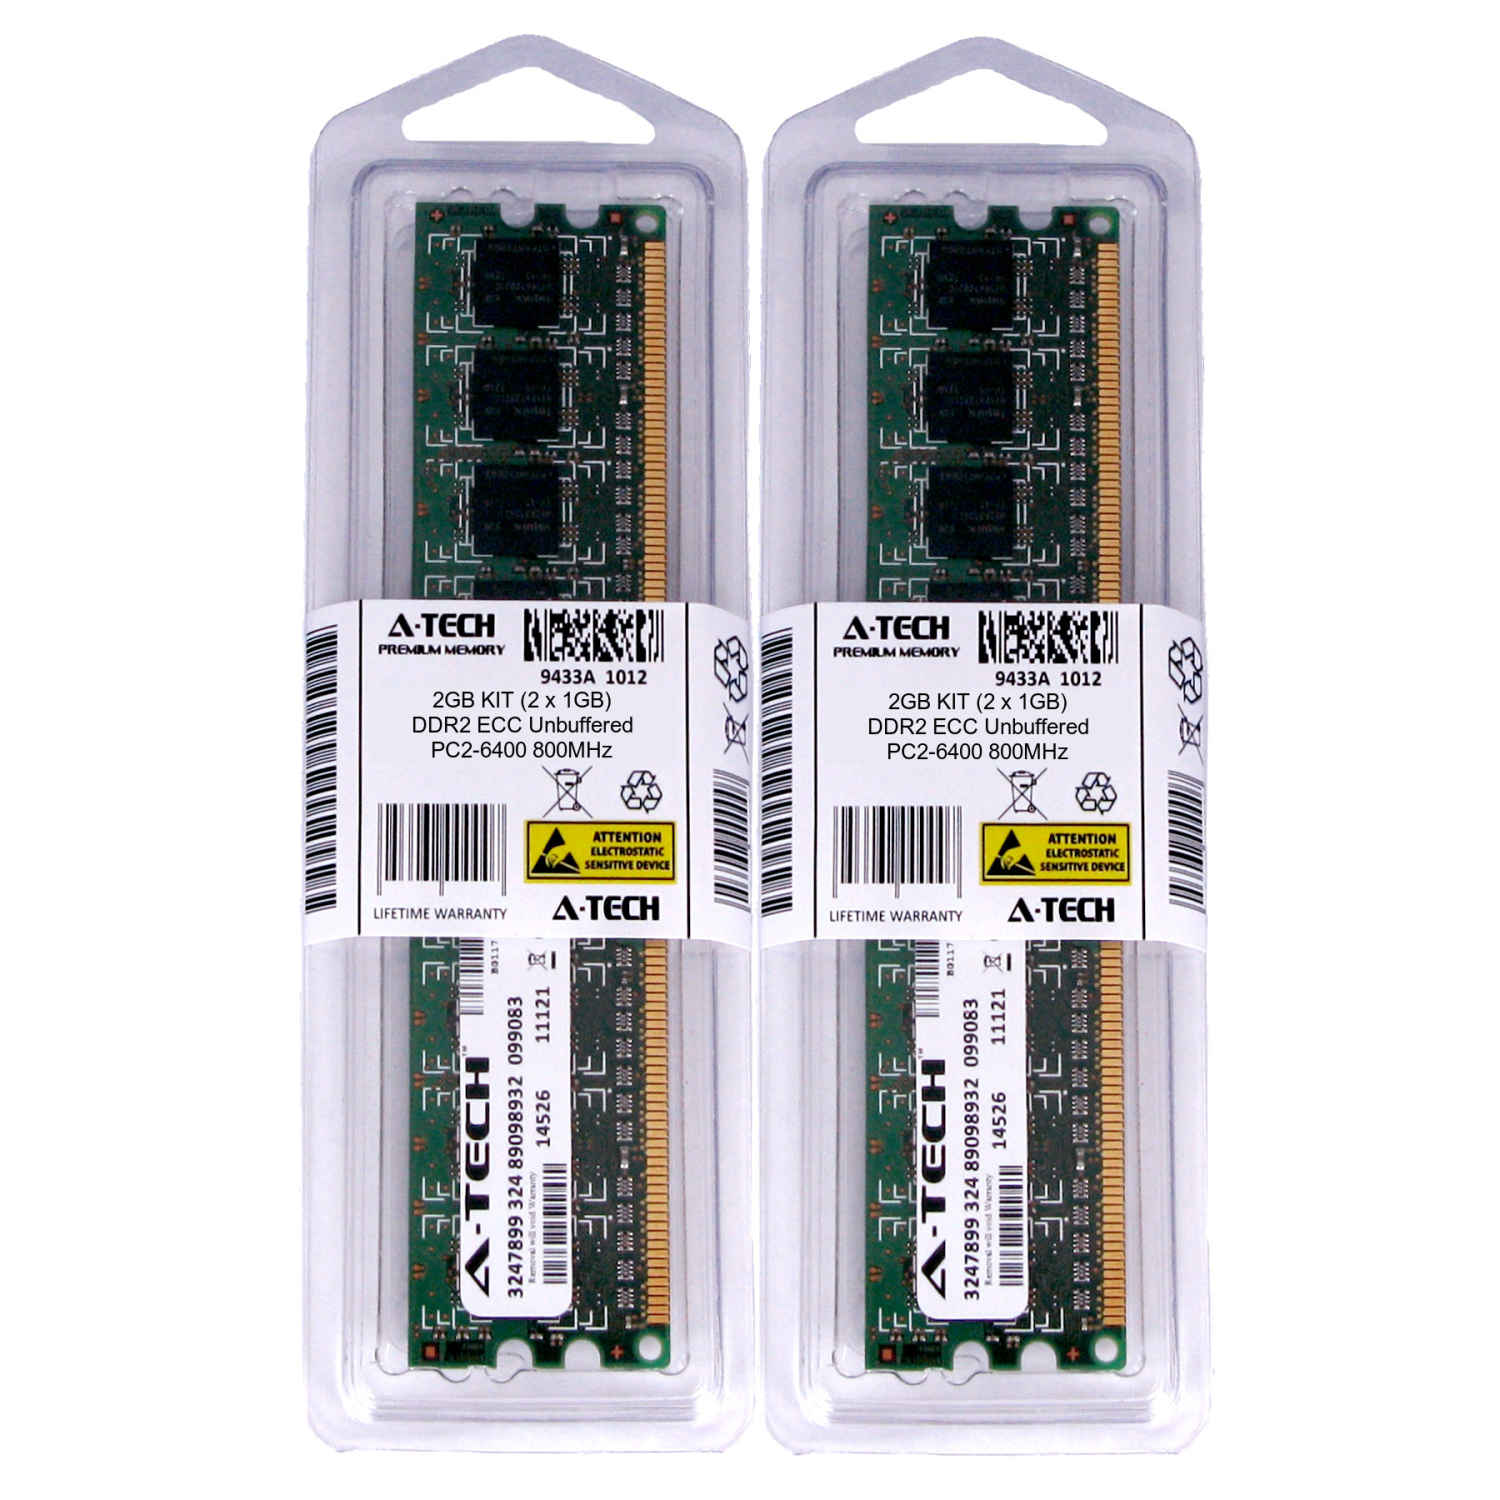 2GB KIT 2 x 1GB DIMM DDR2 ECC Unbuffered PC2-6400 800 MHz Server Memory